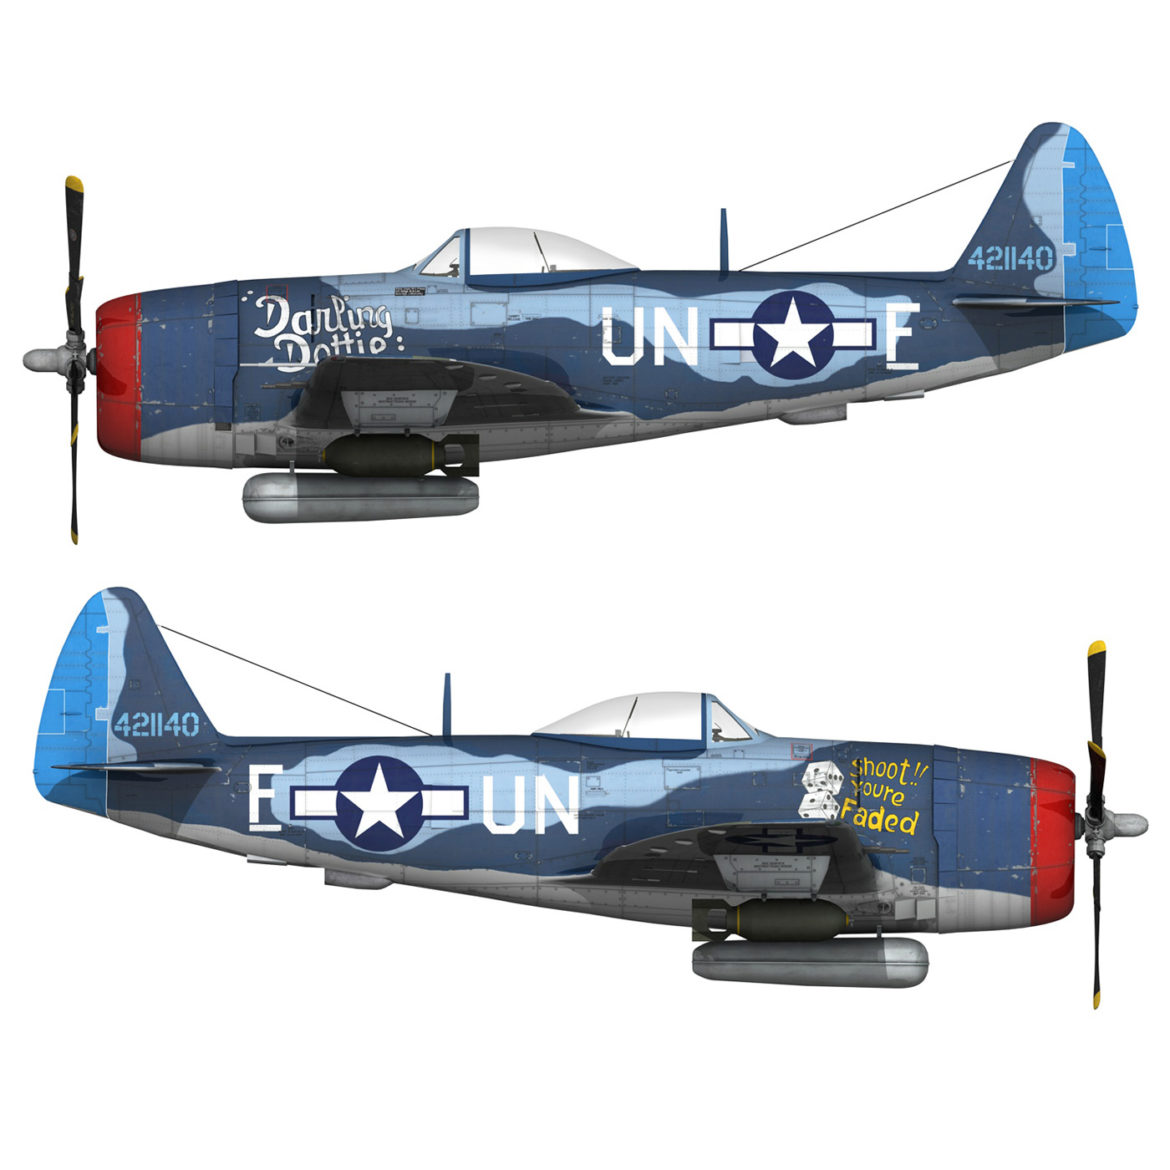 republic p-47m thunderbolt – darling dottie 3d model 3ds c4d lwo lw lws obj fbx 303854